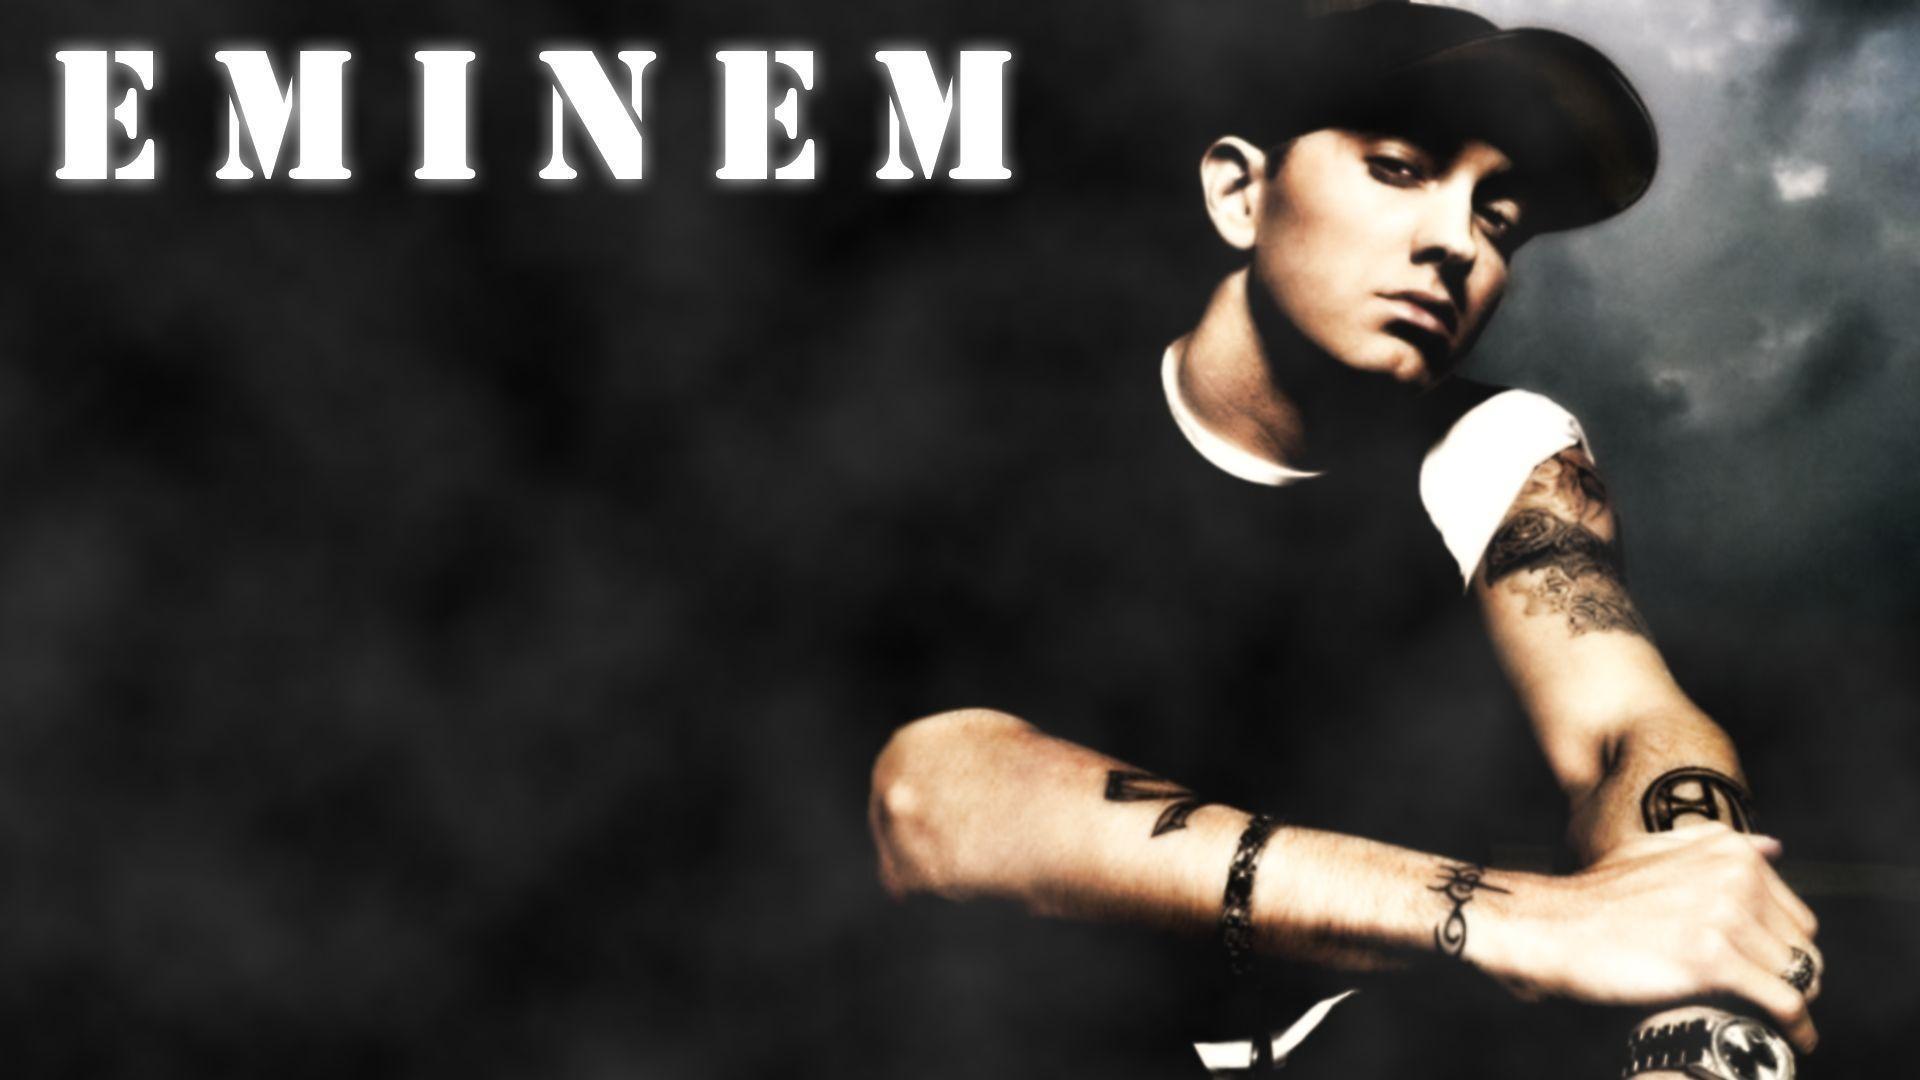 Eminem Wallpaper 1920x1080 px Free Download ID 144102